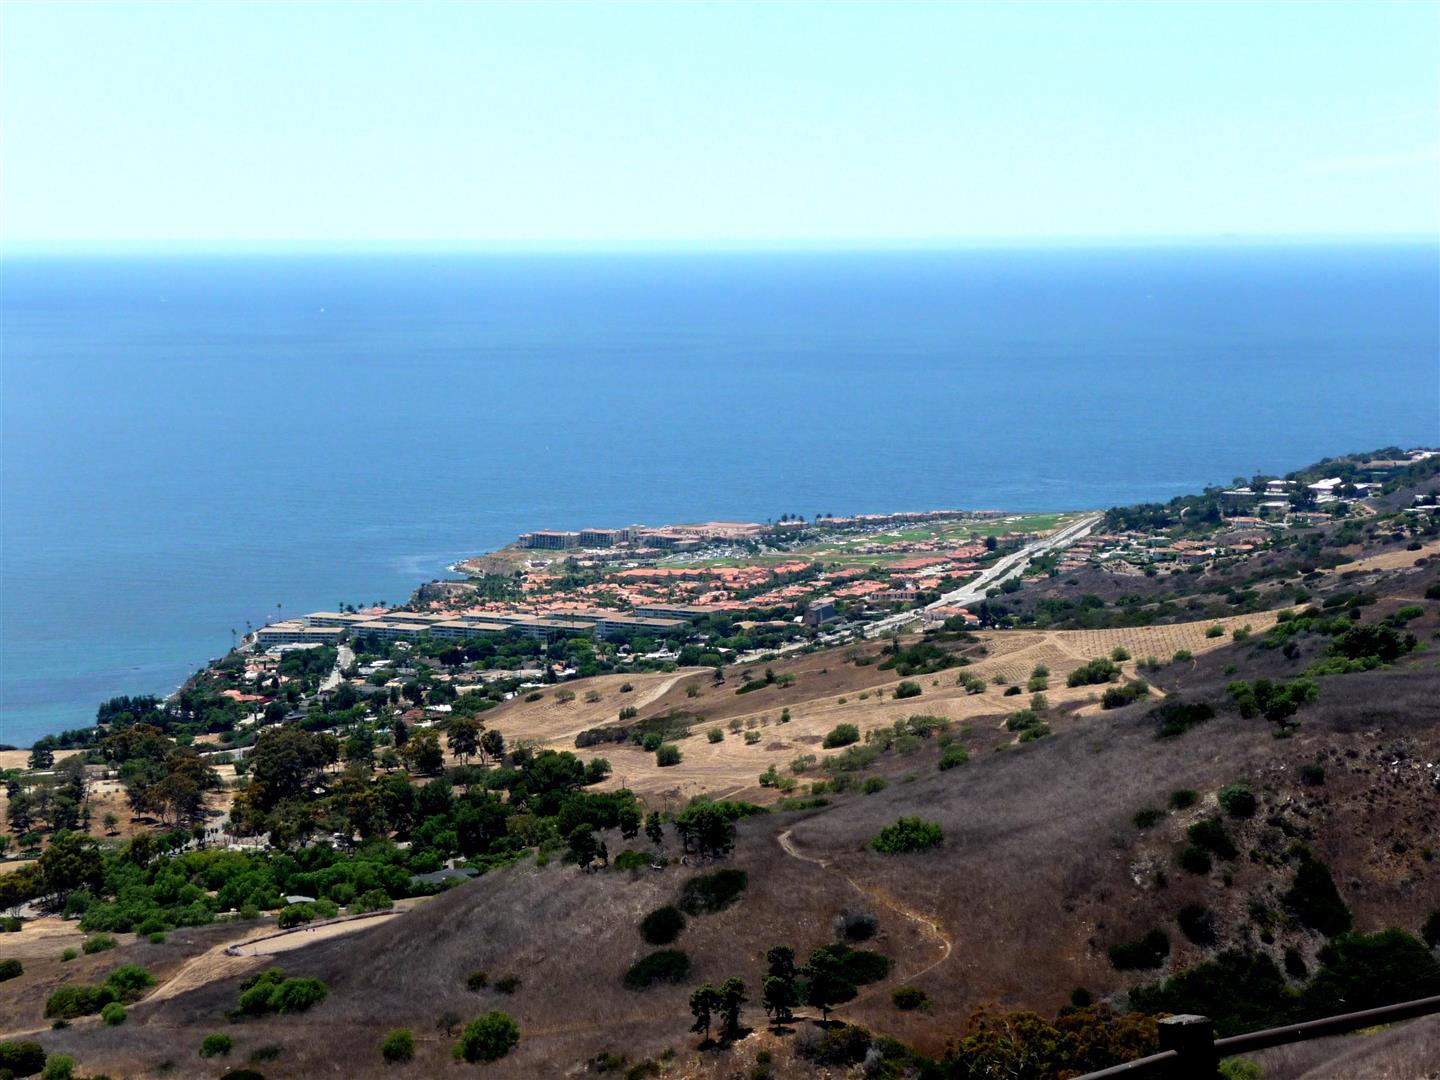 Terranea Resort view from Del Cerro Park in Rancho Palos Verdes